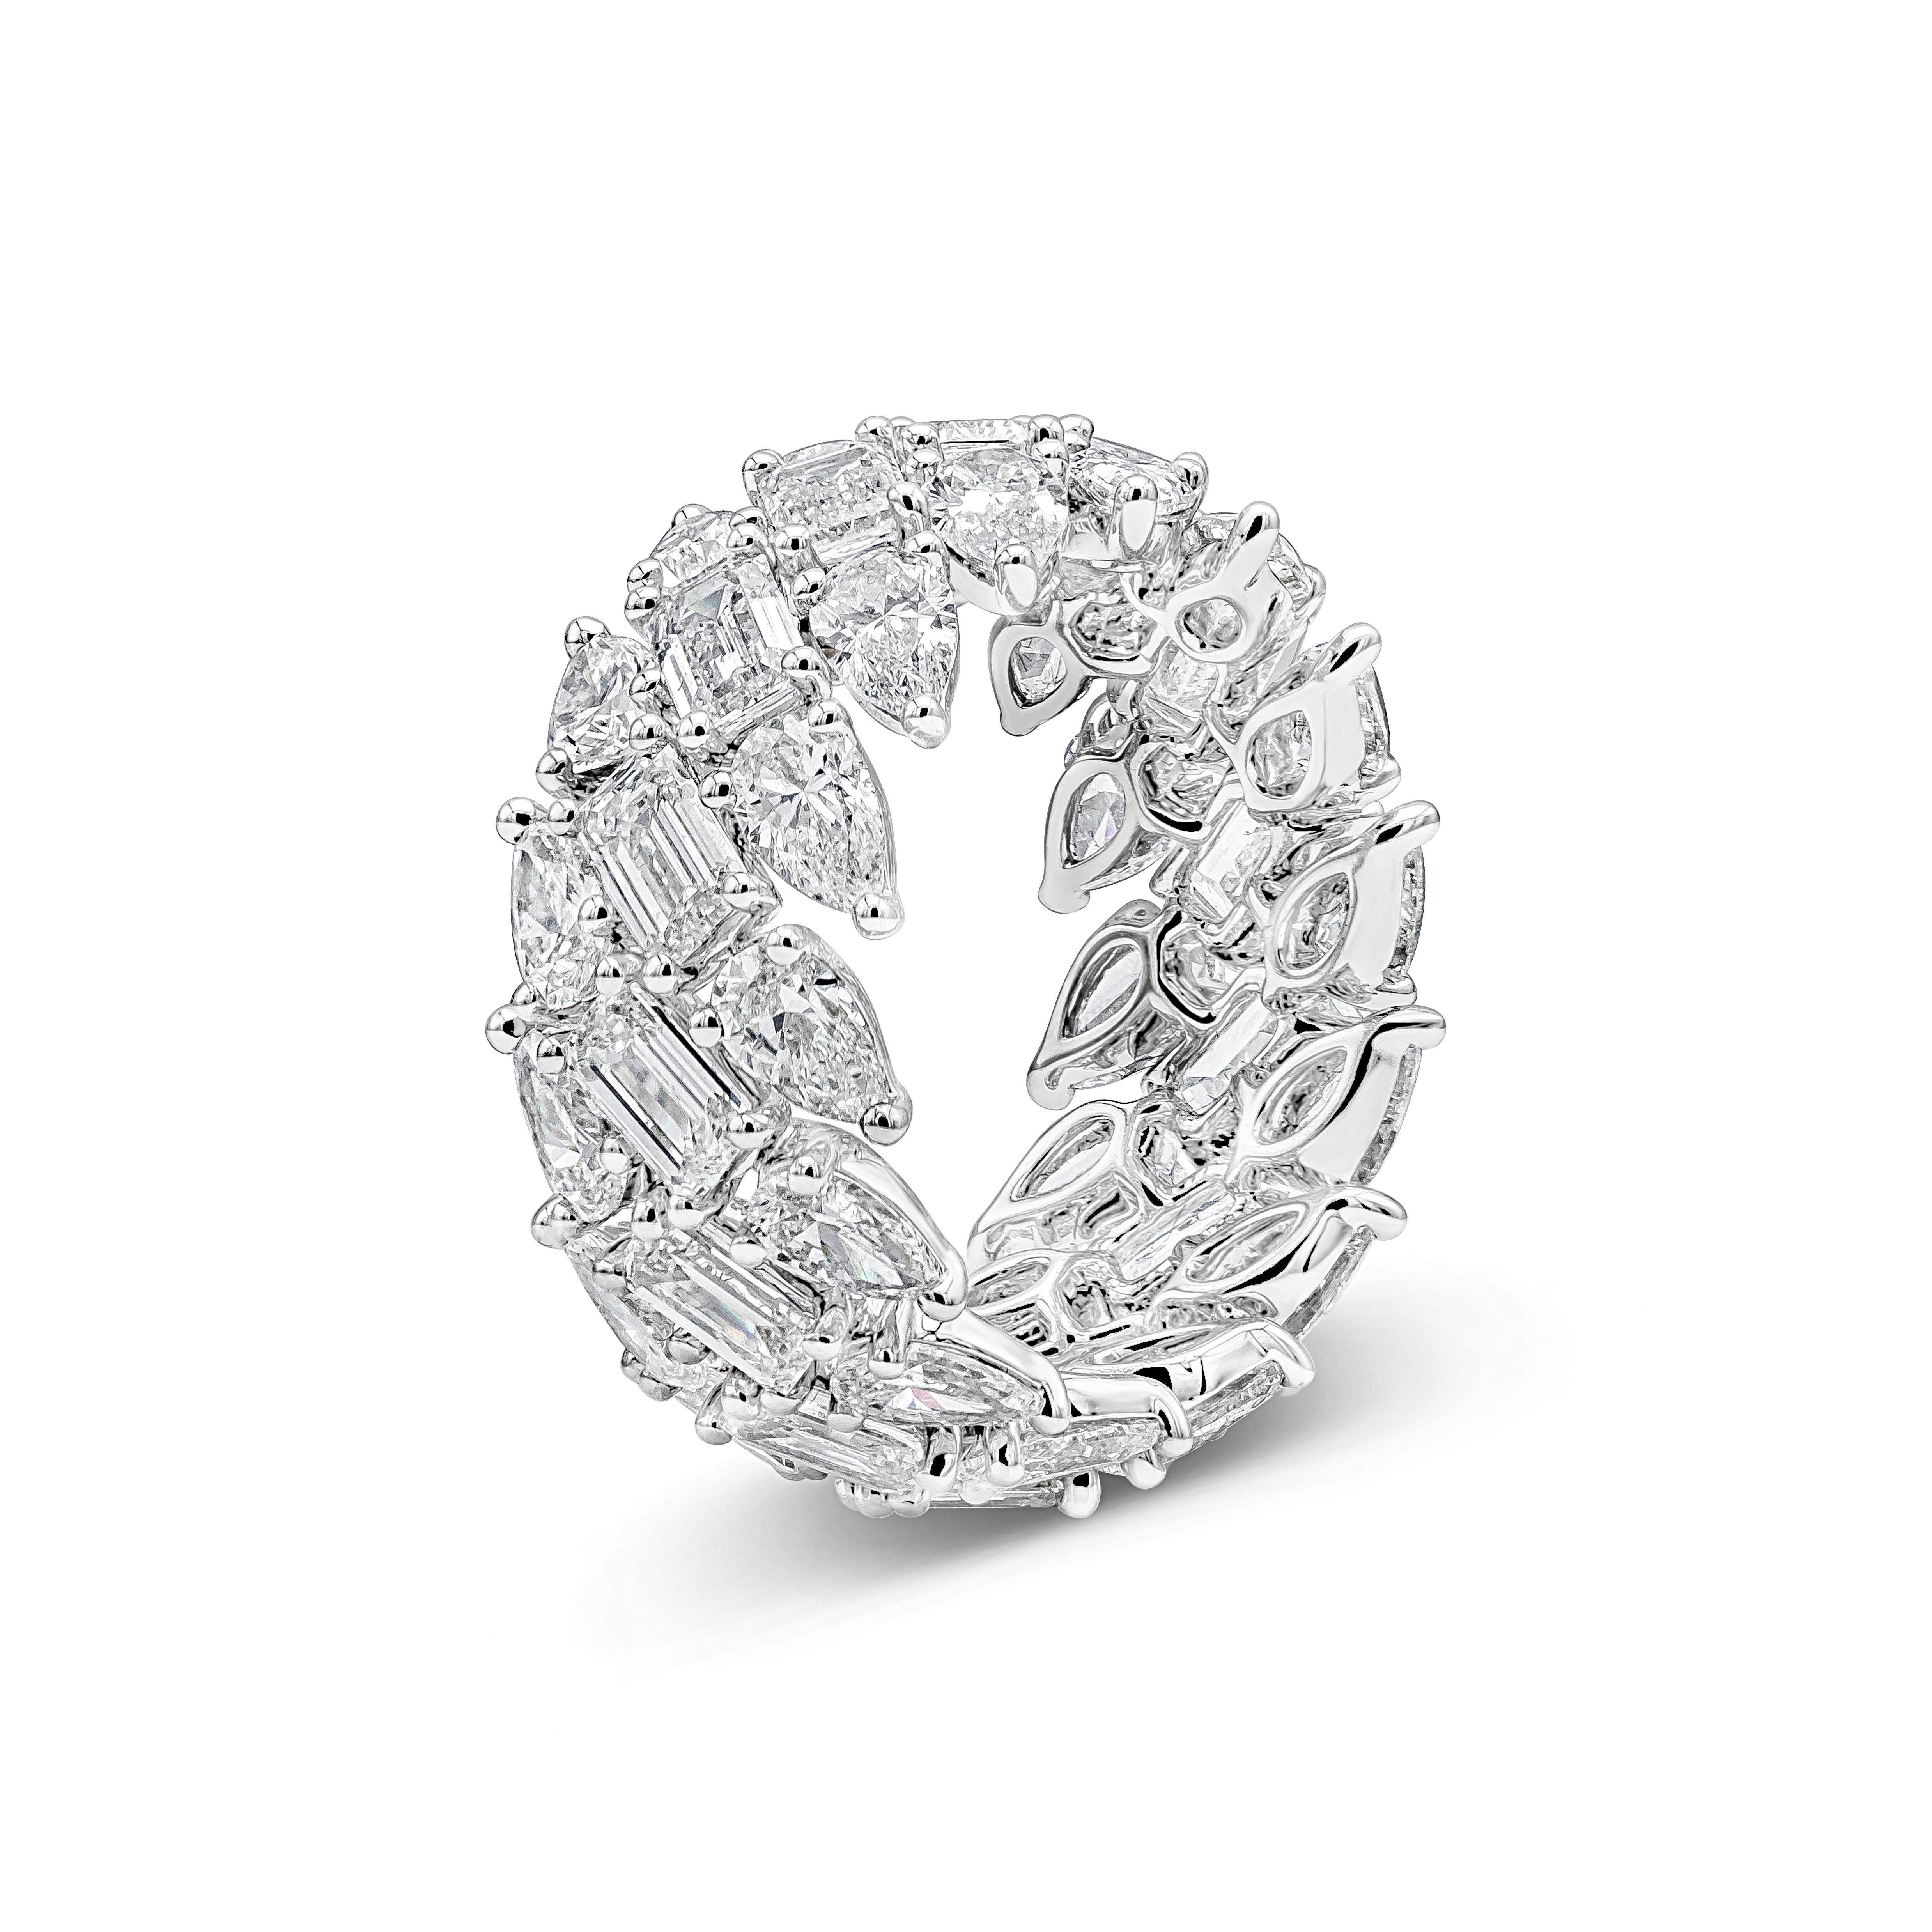 Ein einzigartiger und modischer Ring mit drei Reihen birnenförmiger Diamanten und Diamanten im Smaragdschliff, eingefasst in ein halbschräges Ewigkeitsdesign. Die birnenförmigen Diamanten wiegen insgesamt 4,66 Karat, die Diamanten im Smaragdschliff